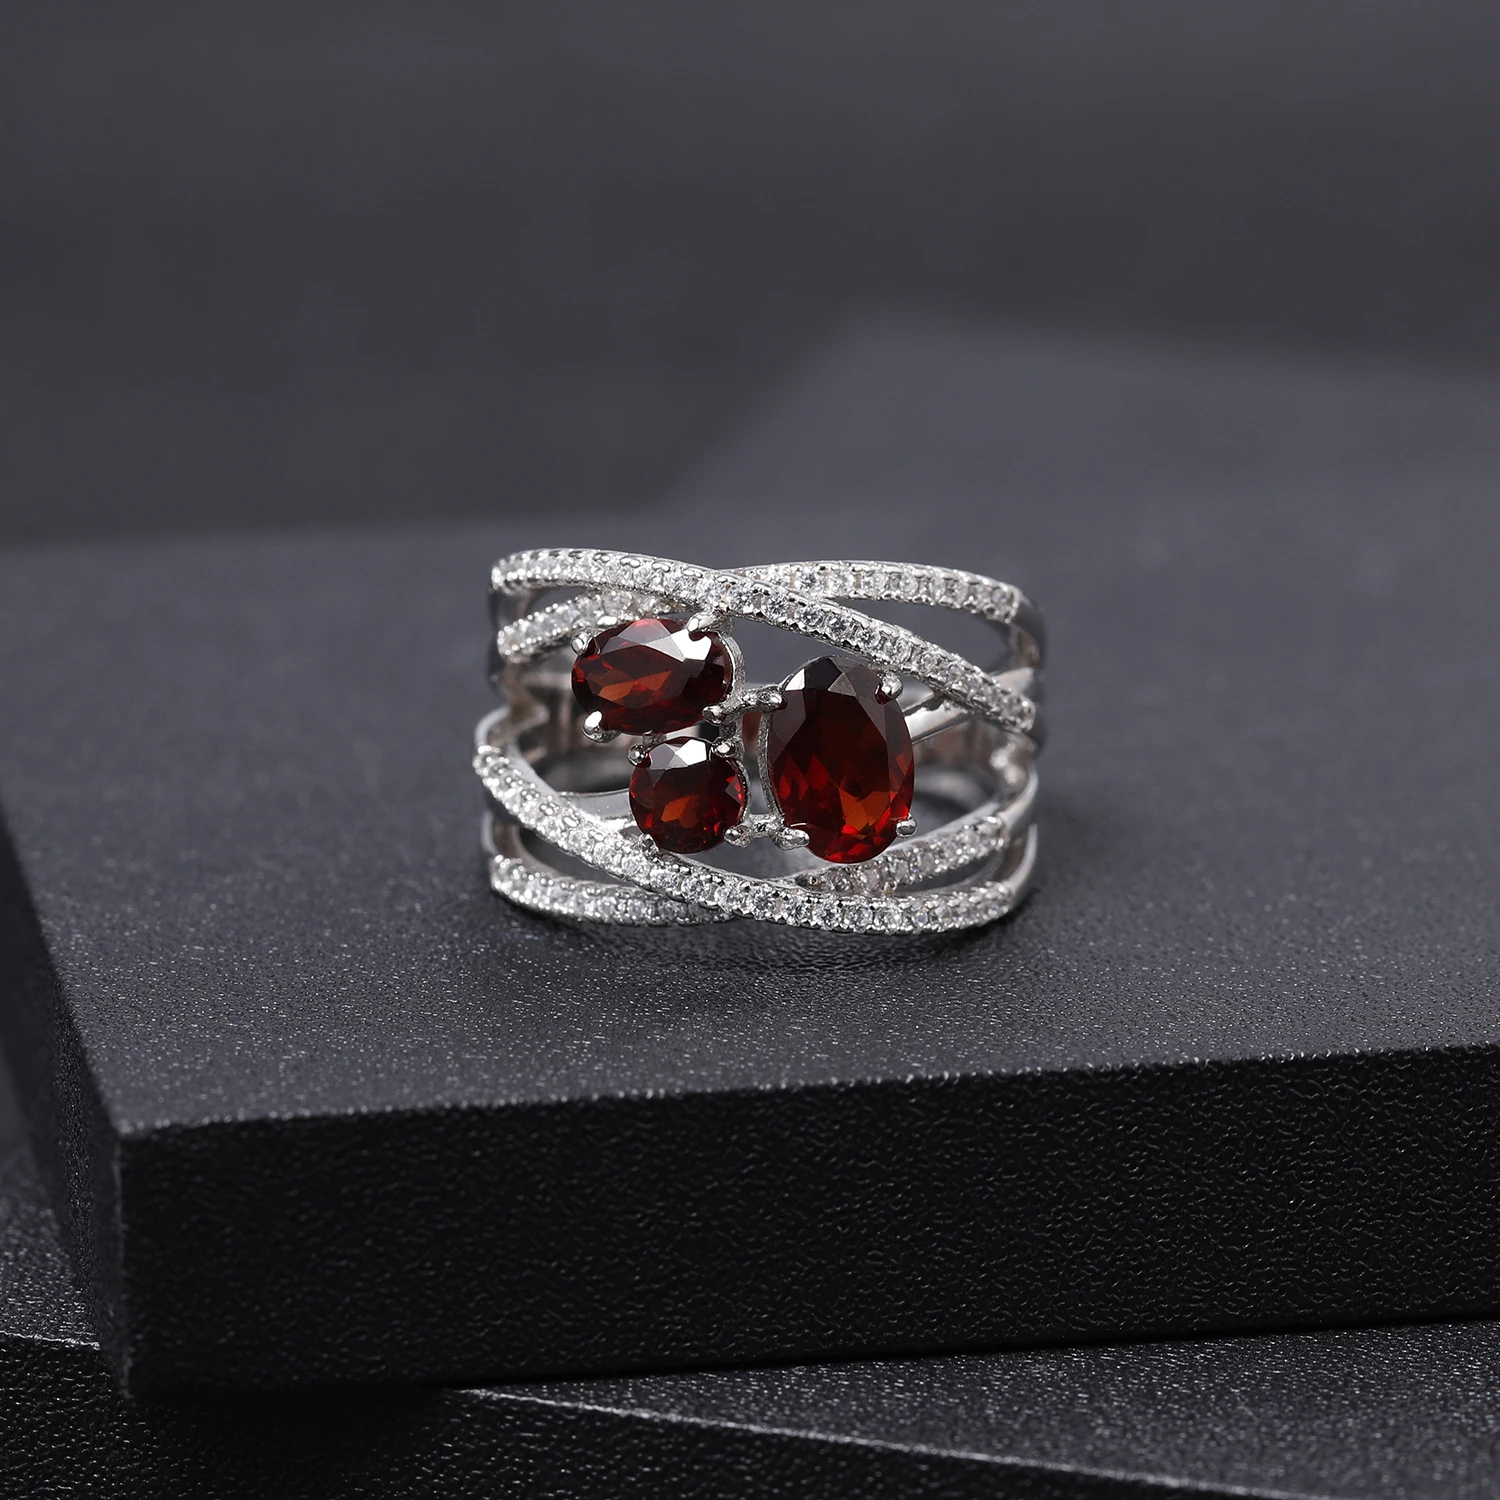 GEM'S BALLET, 1.87Ct, натуральный красный гранат, кольца на палец, 925 пробы, серебро, крест-накрест, ПАВЕ, драгоценный камень, кольцо для женщин, хорошее ювелирное изделие